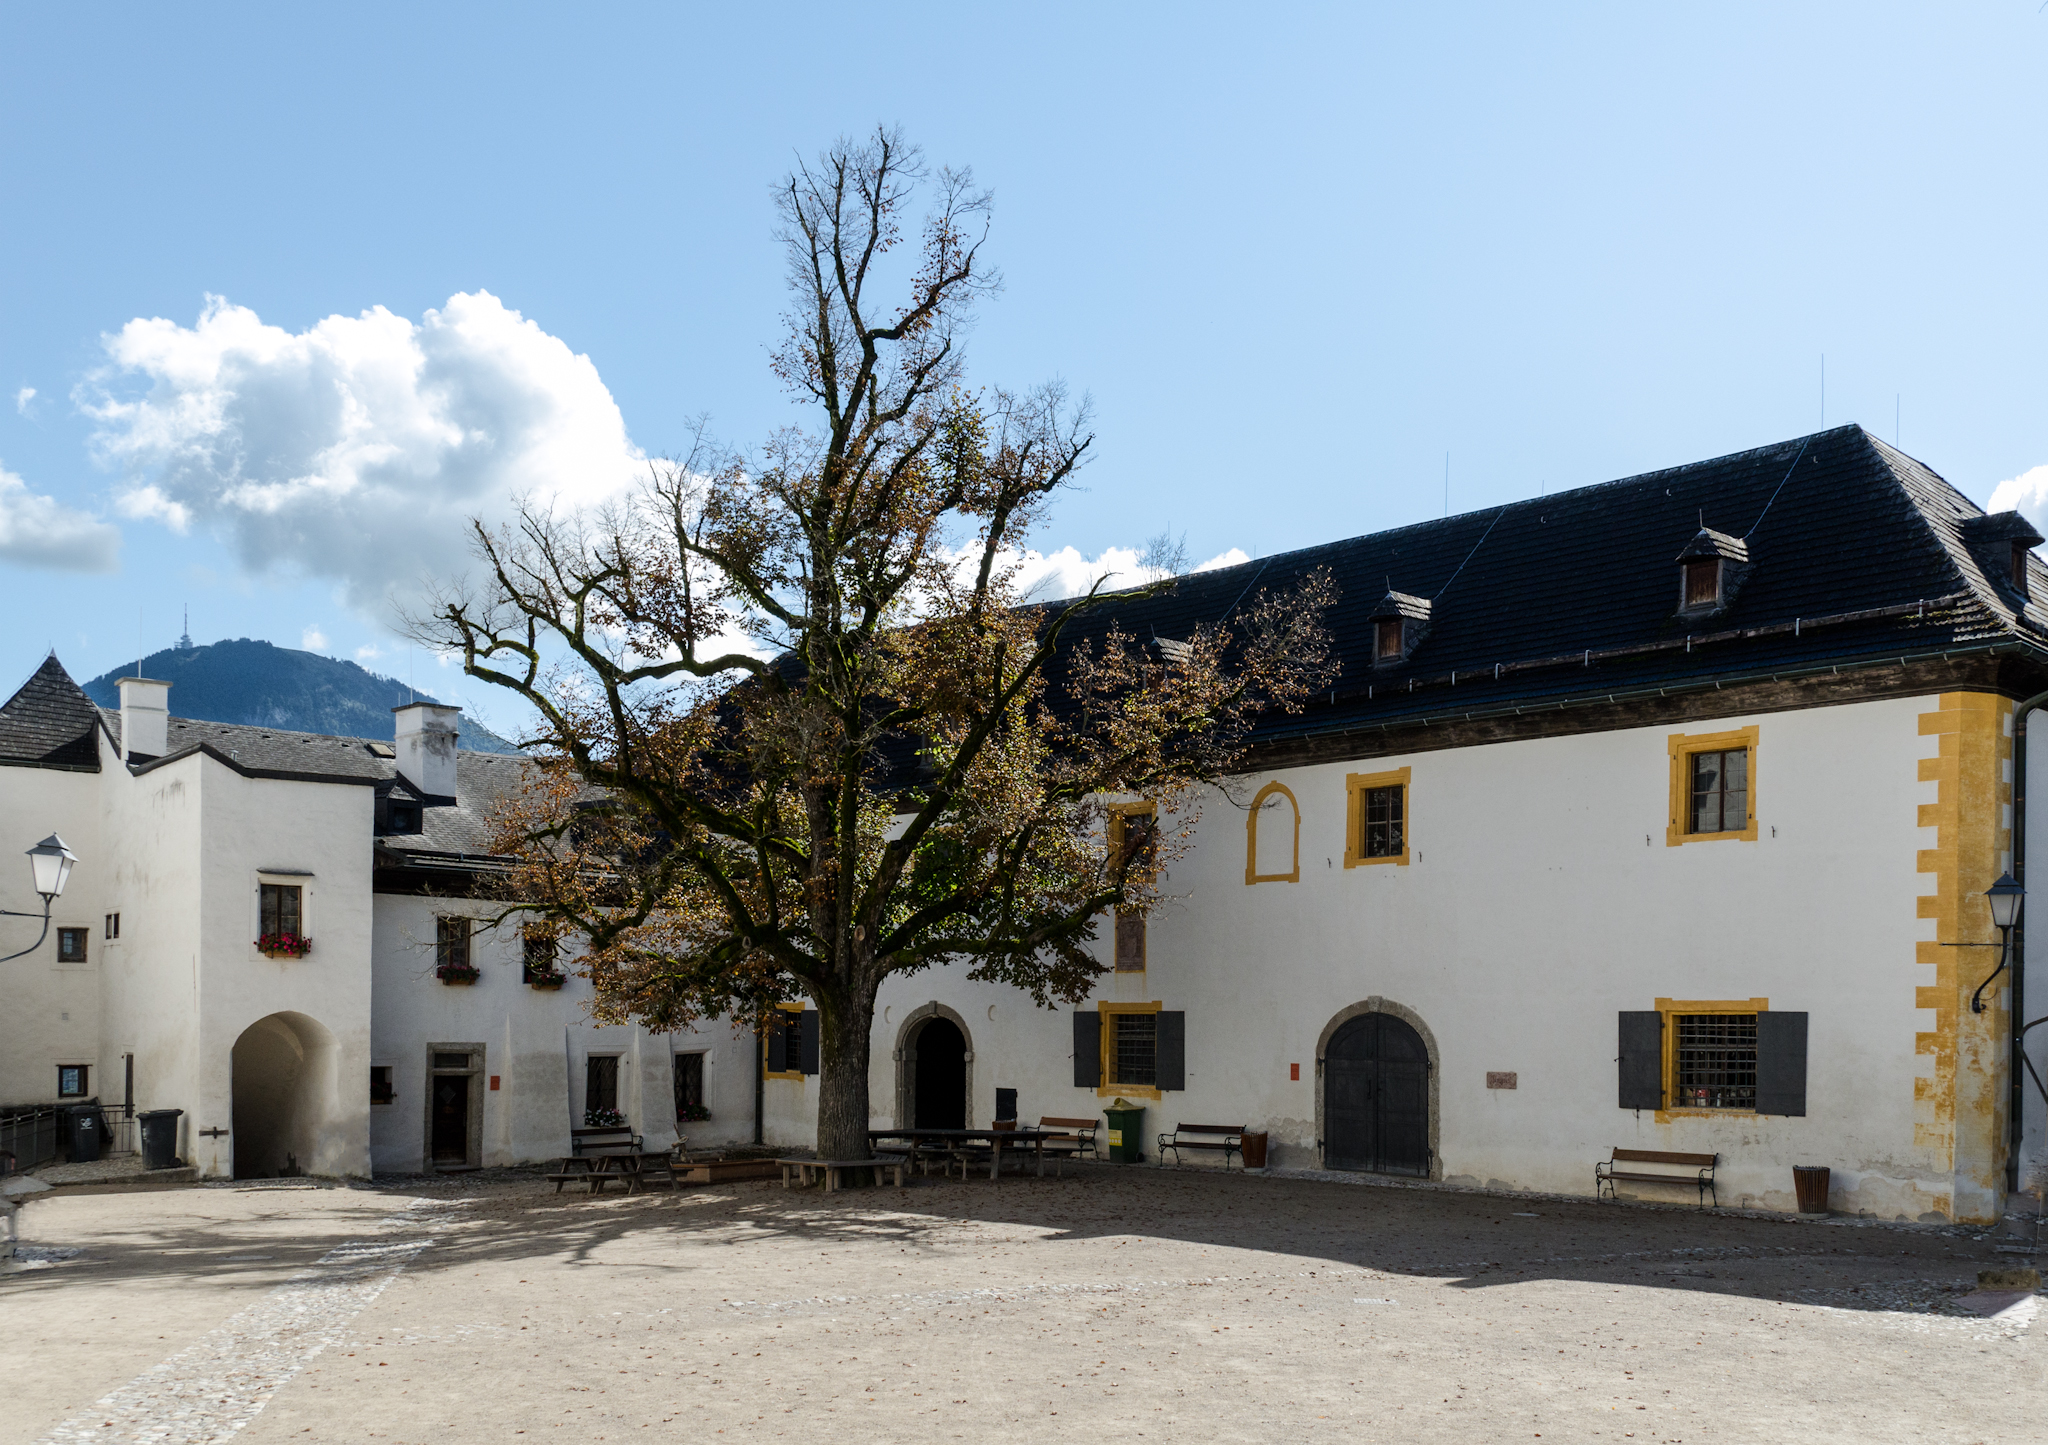 Burghof auf Festung Hohensalzburg